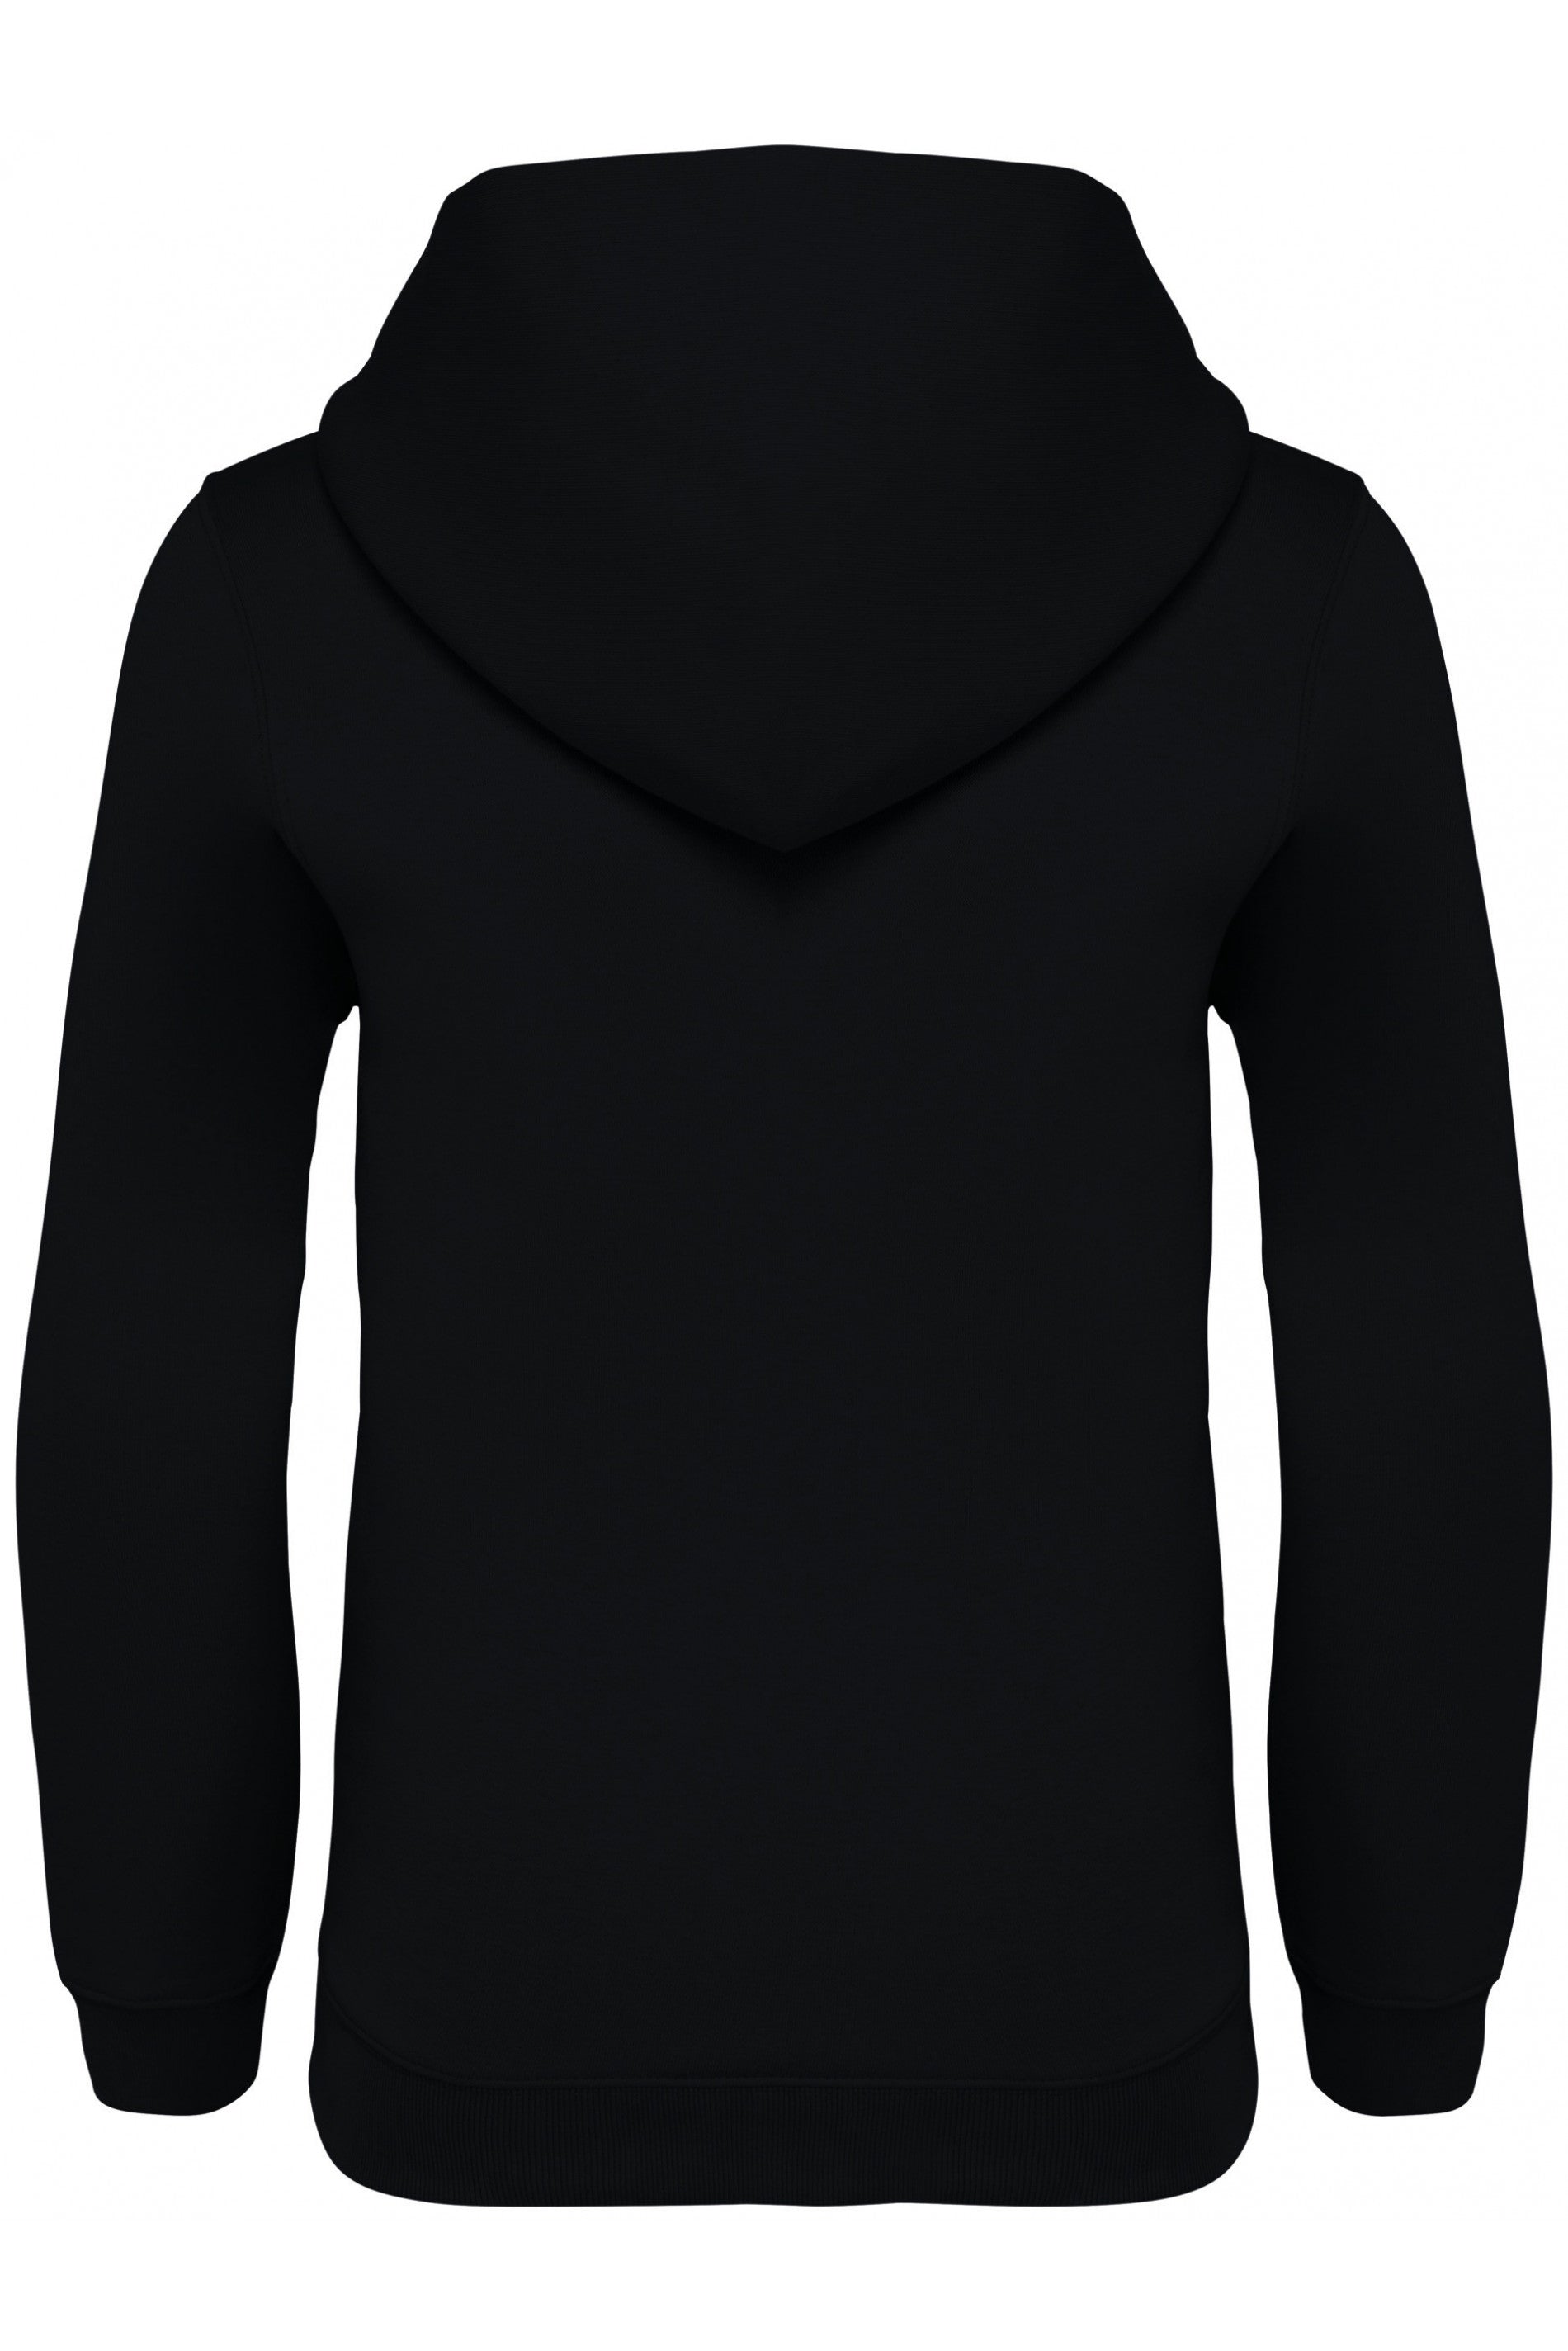 HANGAR premium hoodie kids - 350gr/m²